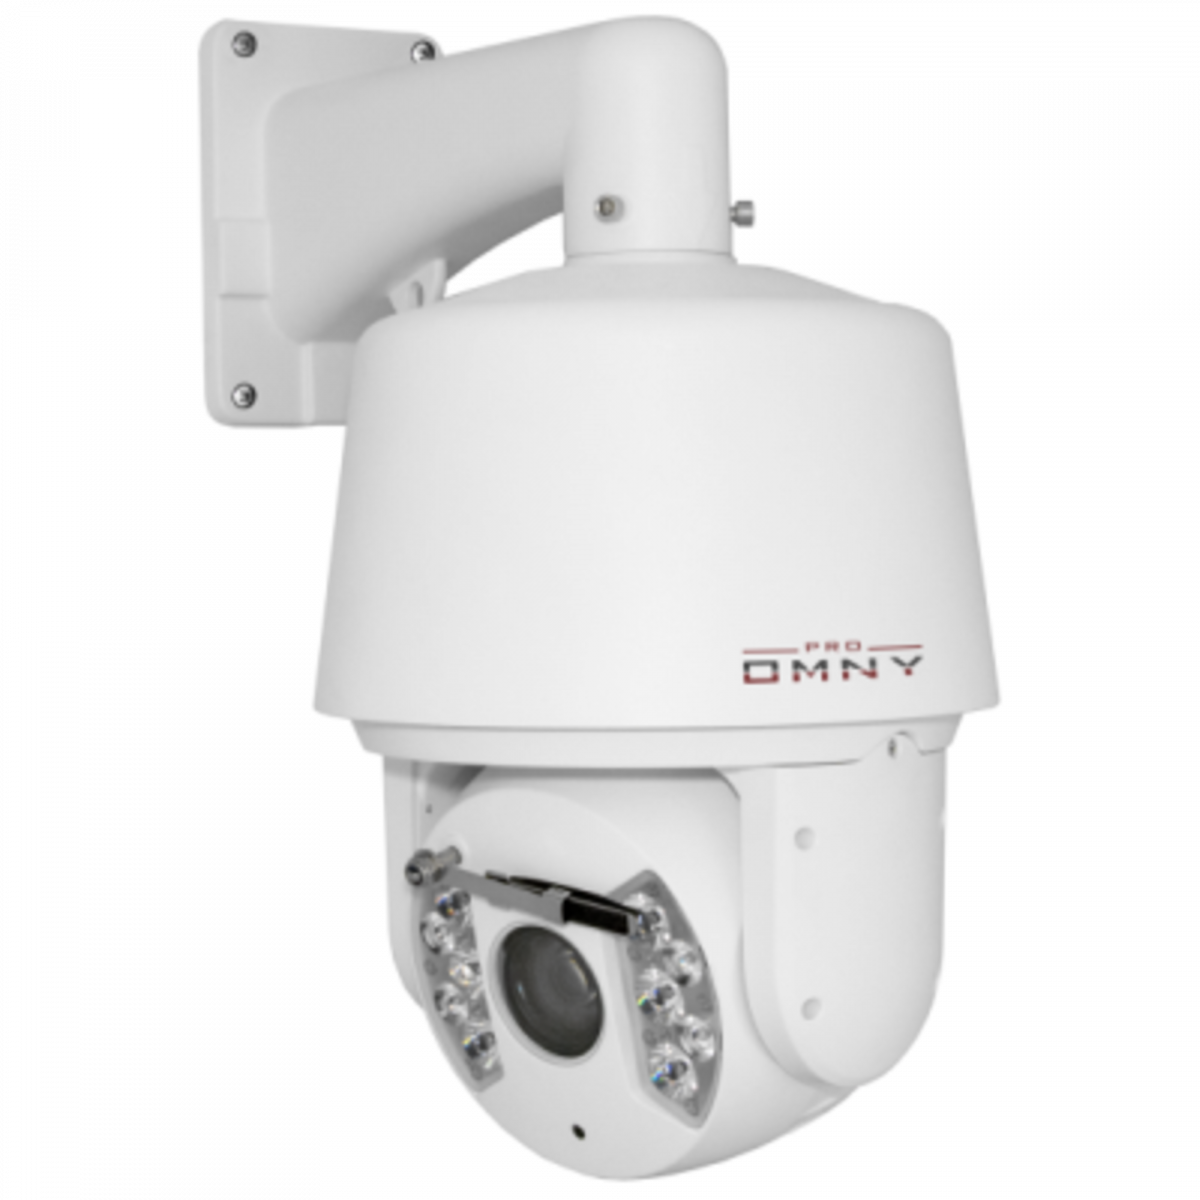 Проектная IP камера OMNY 2030-IR PTZ STARLIGHT cкоростная купольная поворотная 2.0Мп 30х зум,ИК подсветка до 150м,с аналитикой, 24V AC